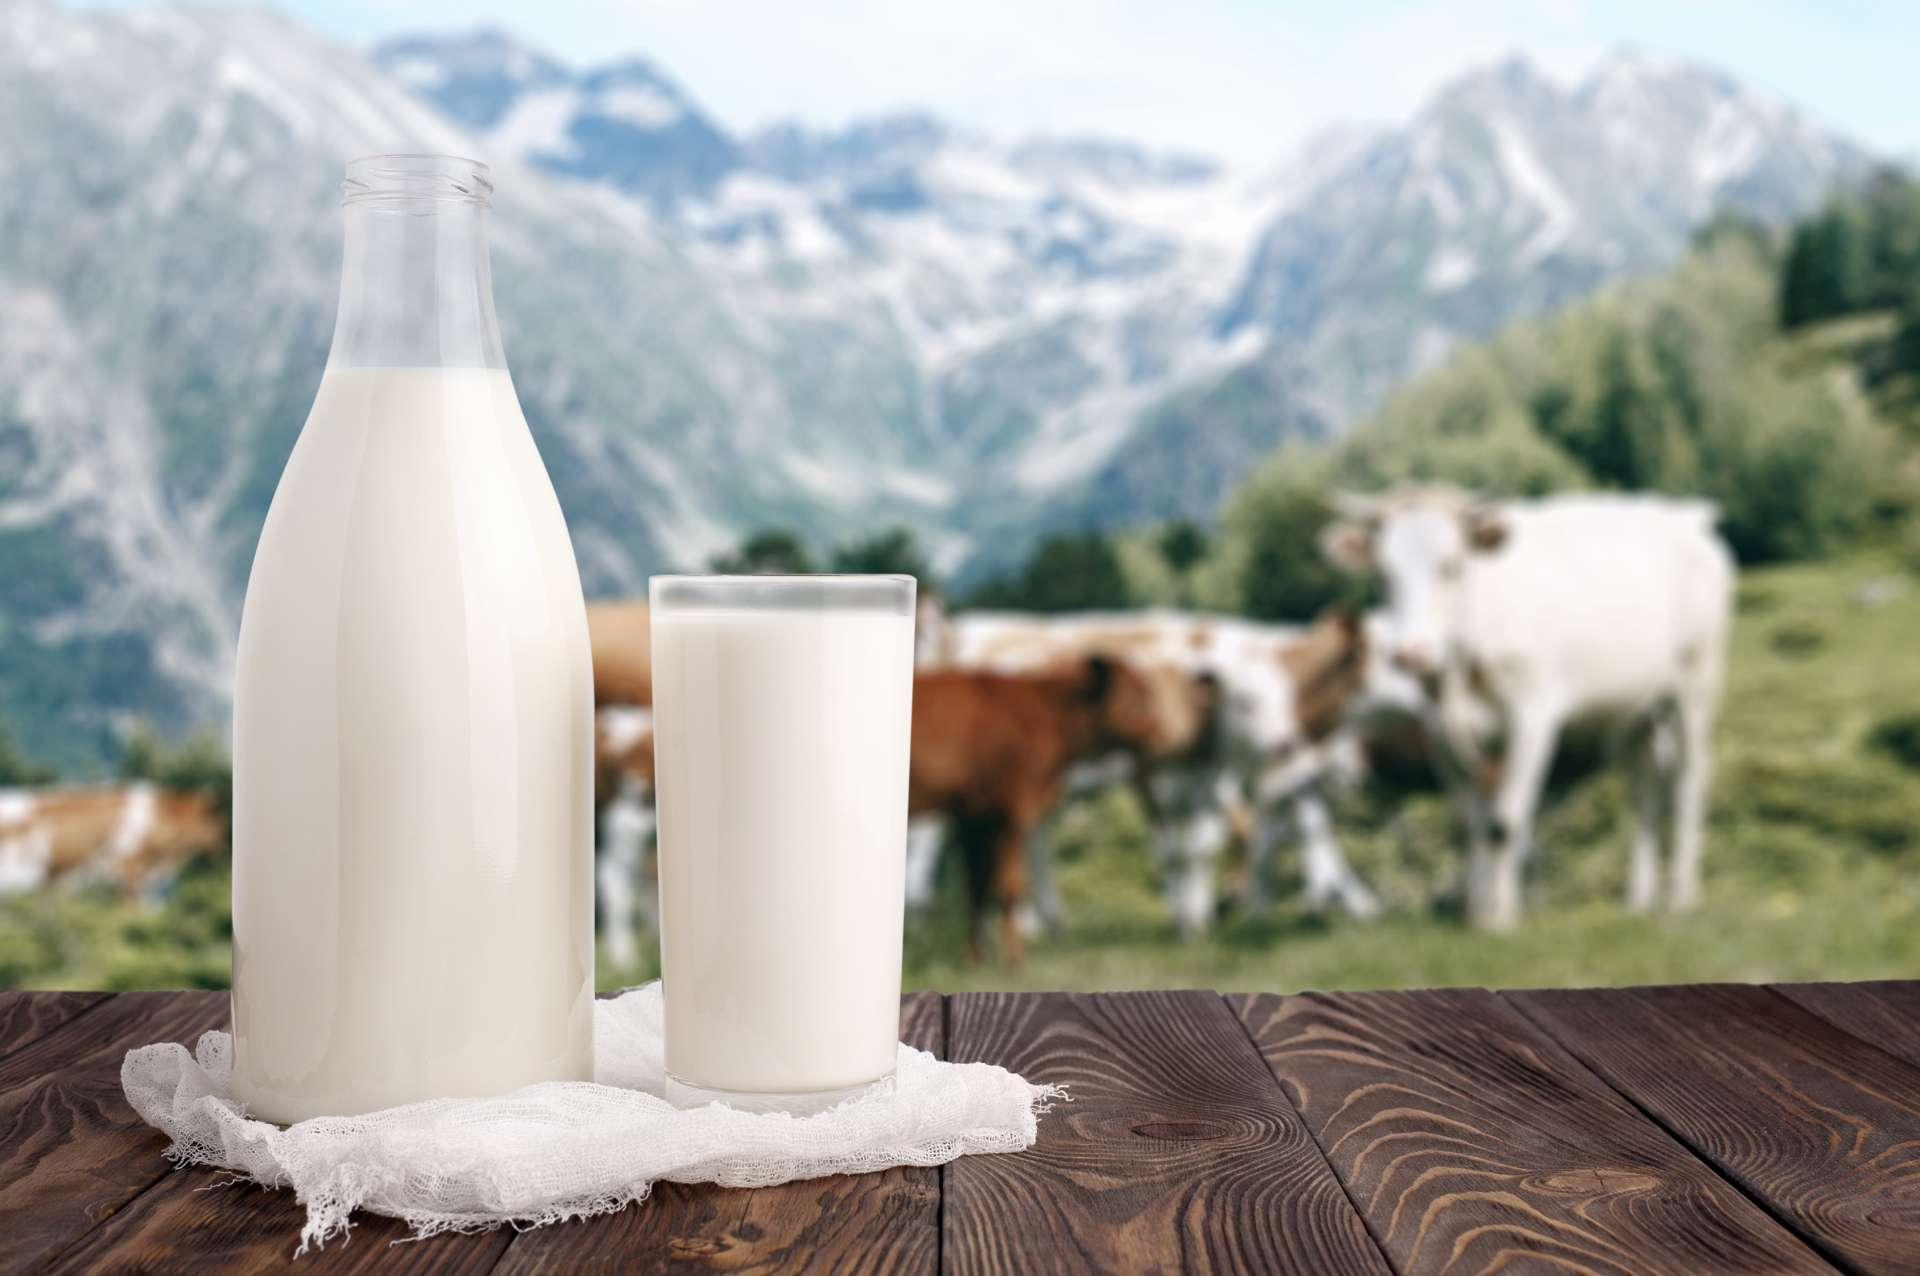 Milchflasche und Glas Milch an der hölzernen Tischplatte auf Hintergrund der Bergweide und der Kuhherde. Ökologische Milchproduktion